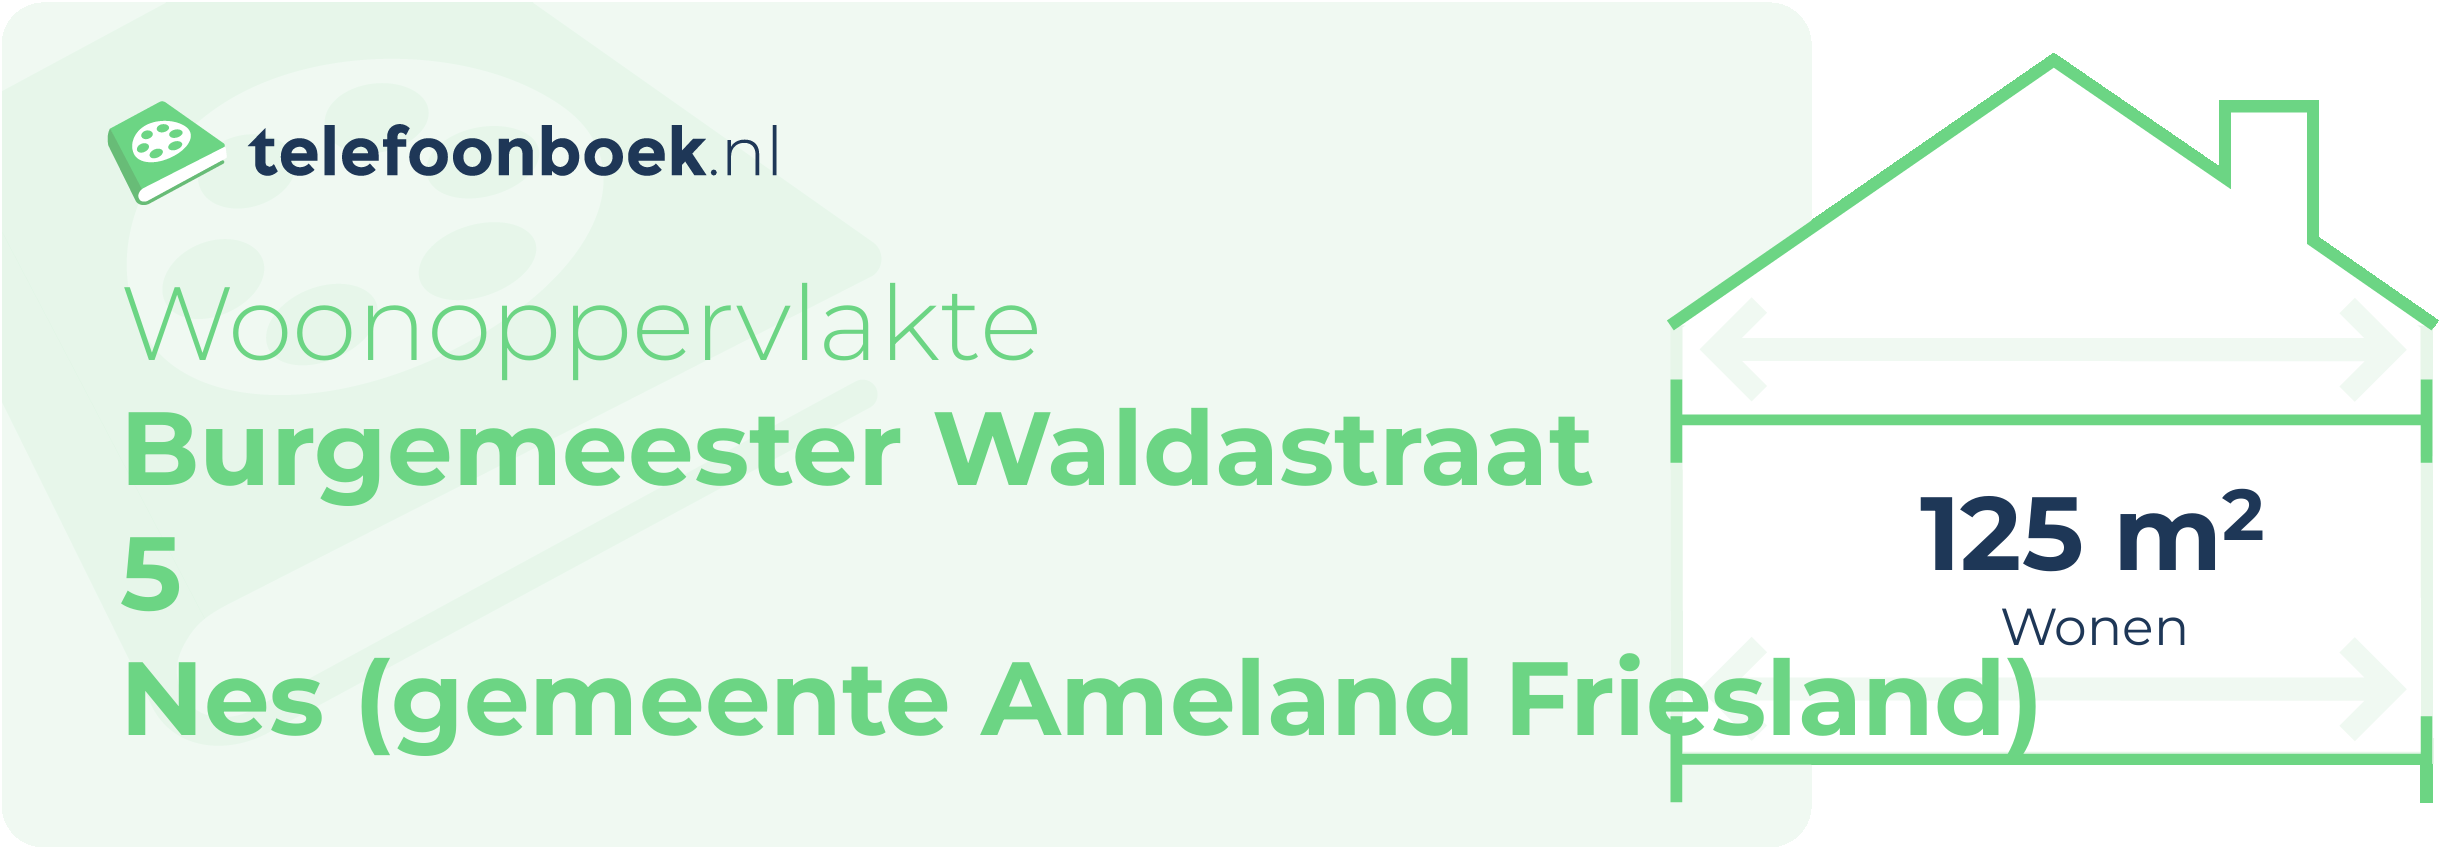 Woonoppervlakte Burgemeester Waldastraat 5 Nes (gemeente Ameland Friesland)